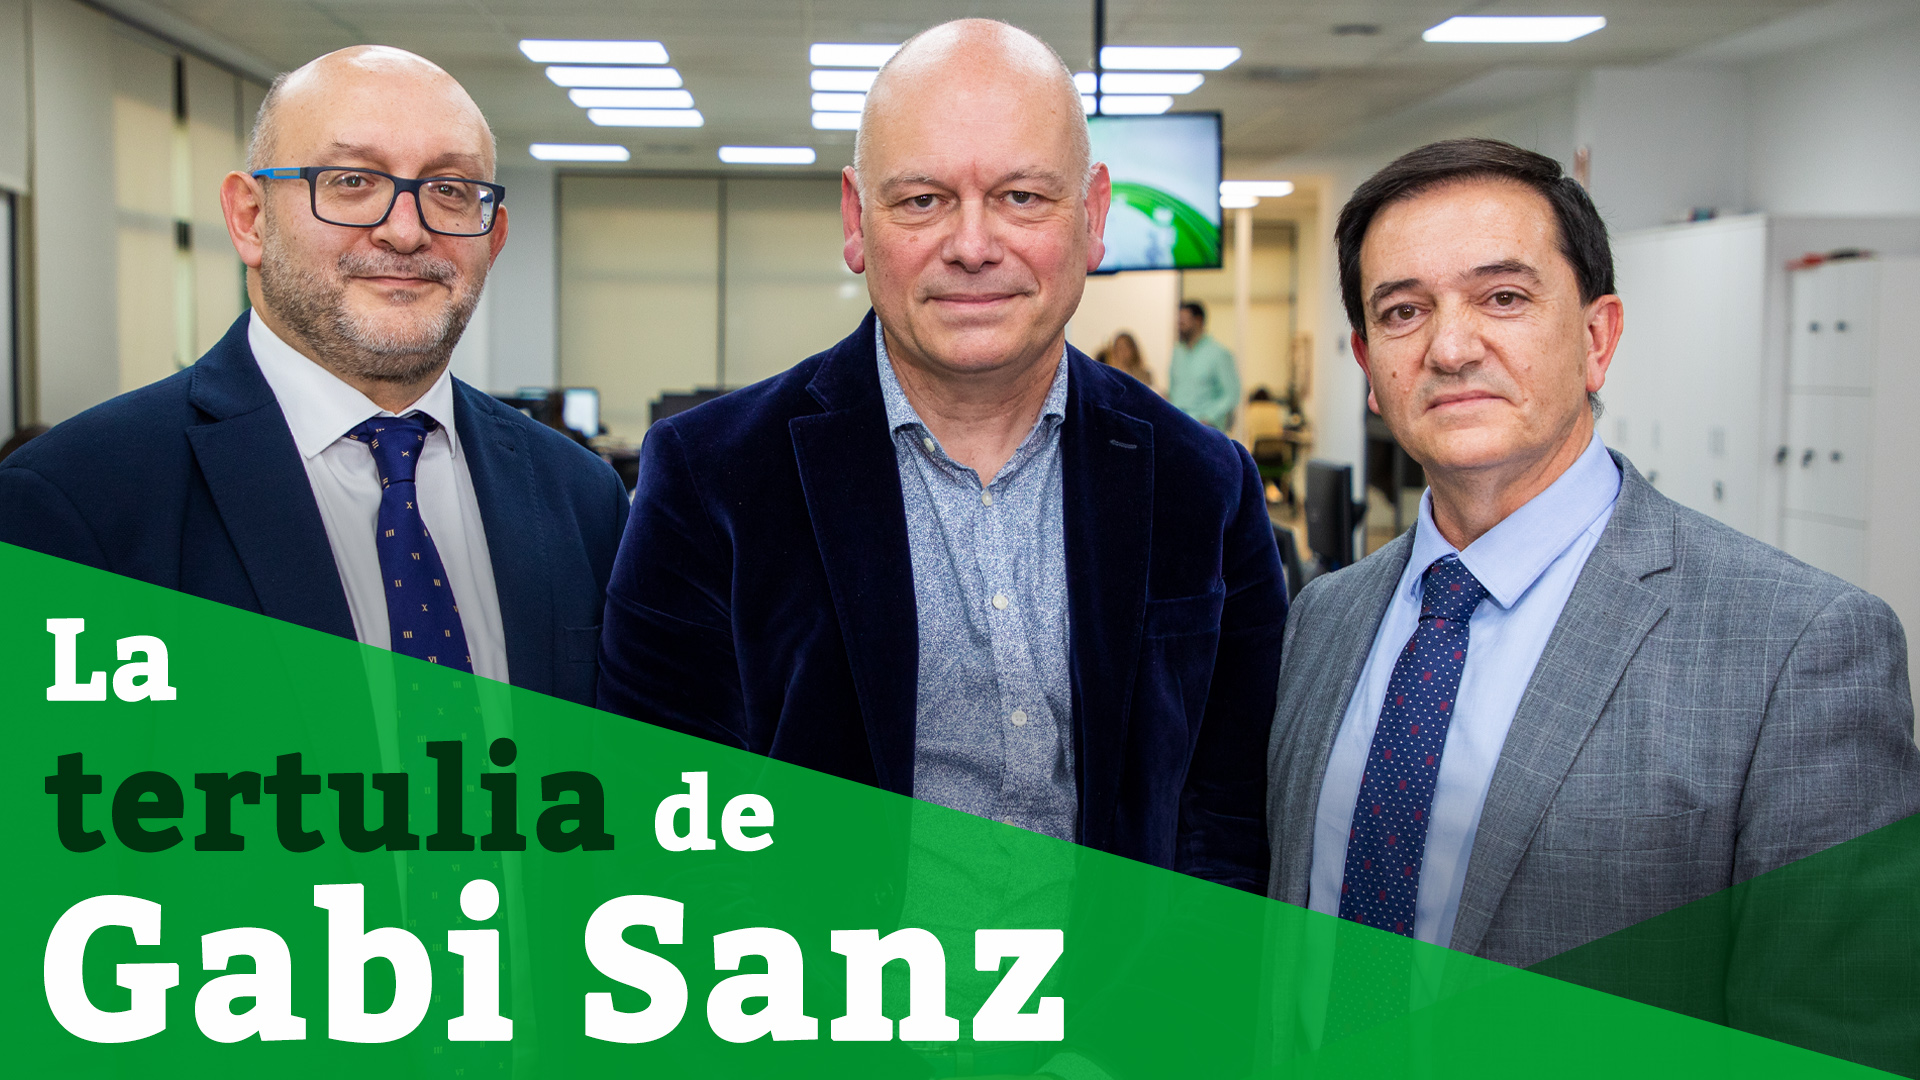 Los representantes de colectivos sanitarios Francisco José Sáez Martínez y Diego Ayuso son los invitados de esta semana en 'La tertulia de Gabi Sanz'